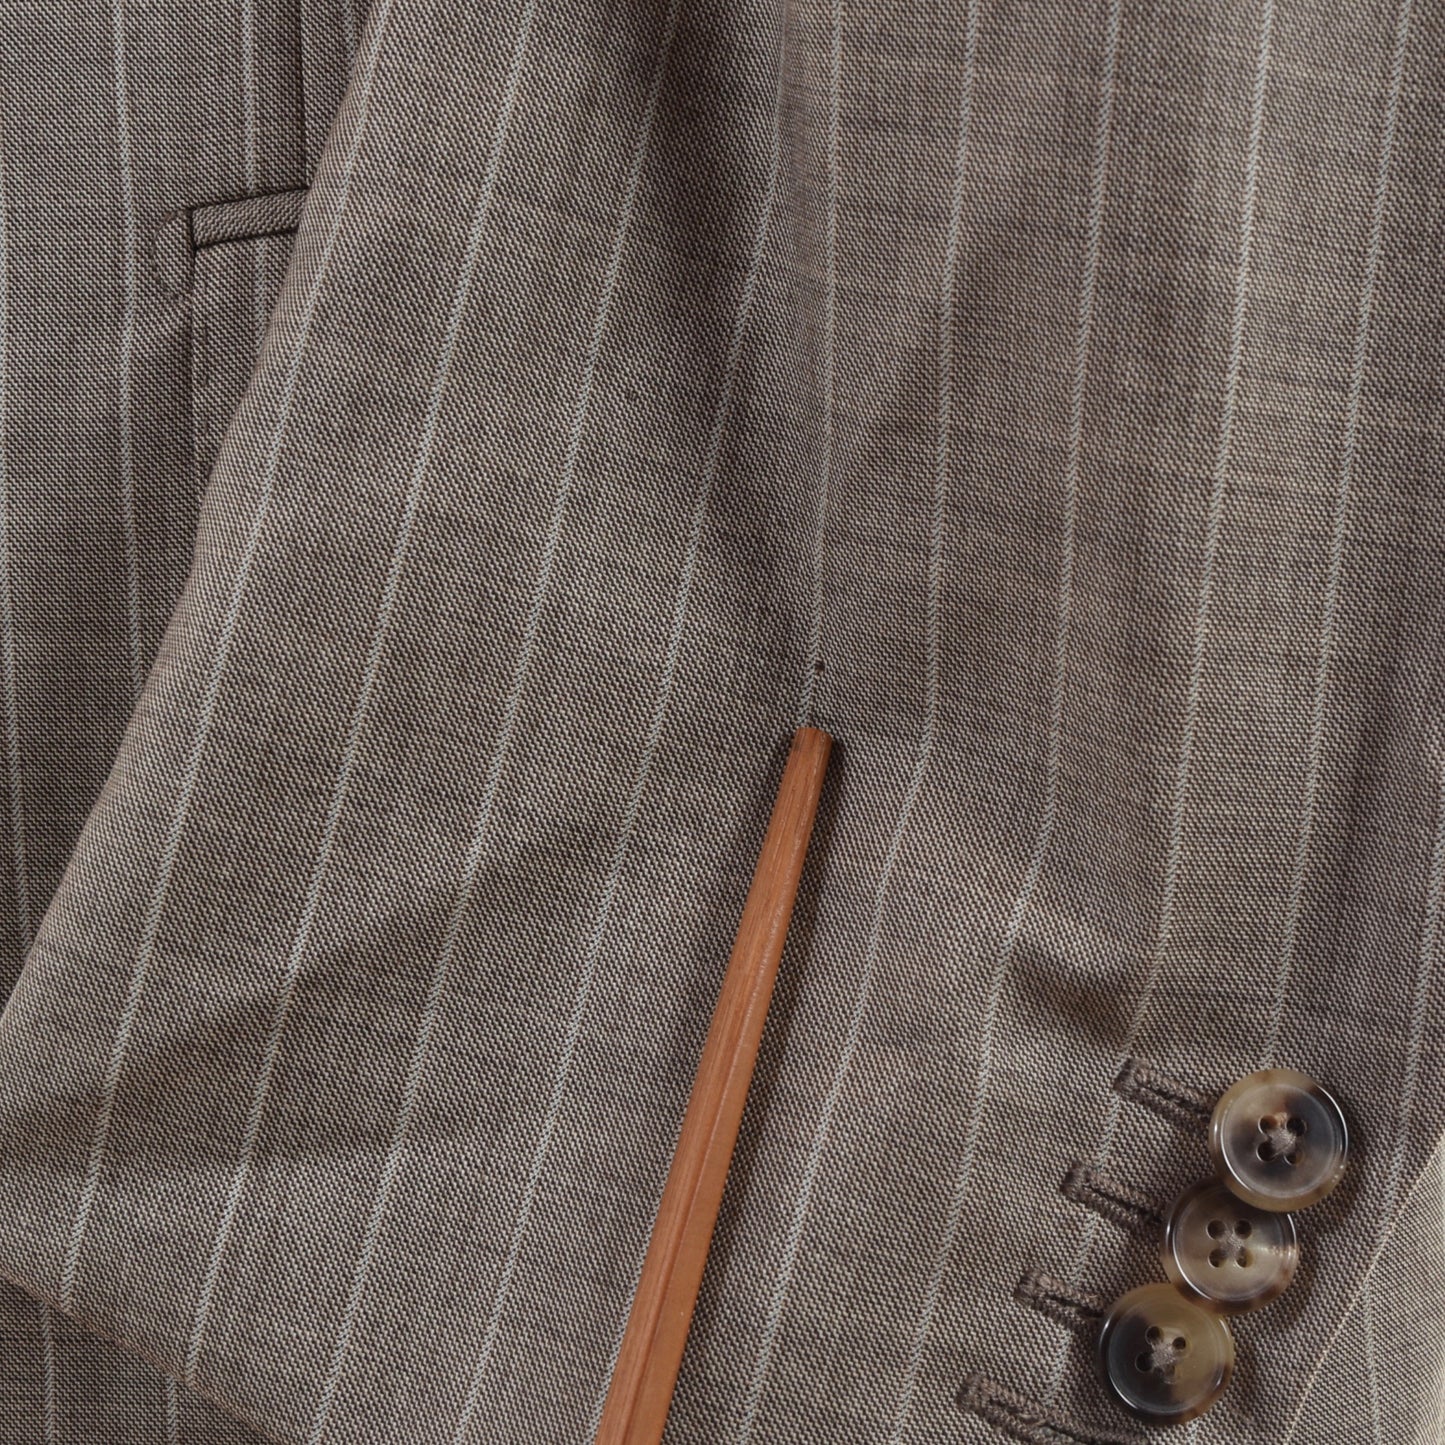 Ermenegildo Zegna Striped Trofeo Wool Suit - Tan-Grey